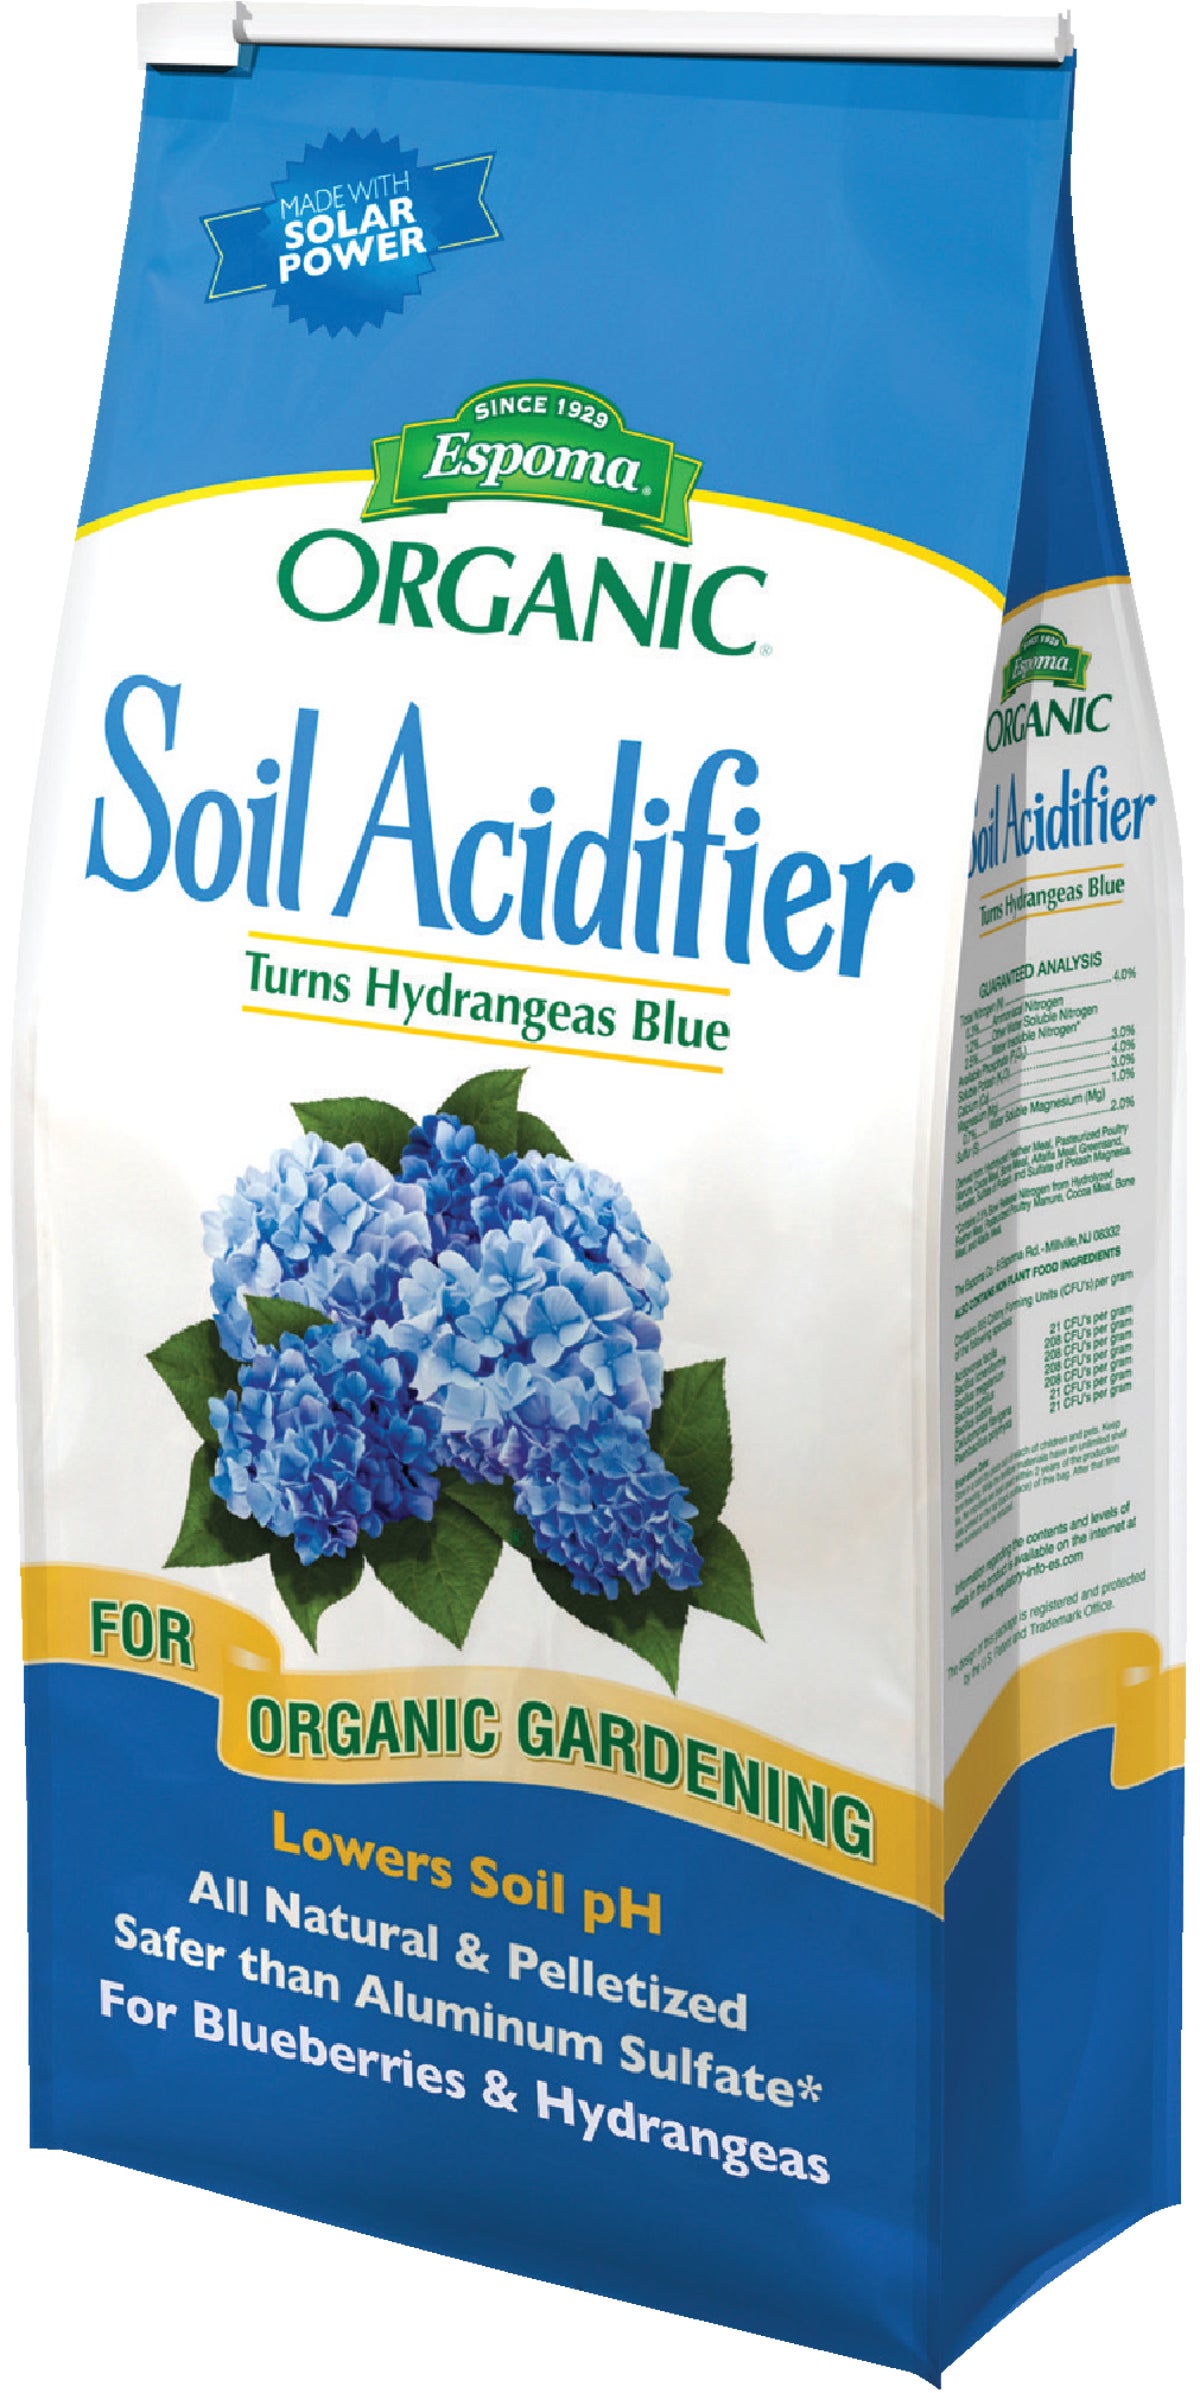 Buy Espoma Organic Soil Acidifier 6 Lb.